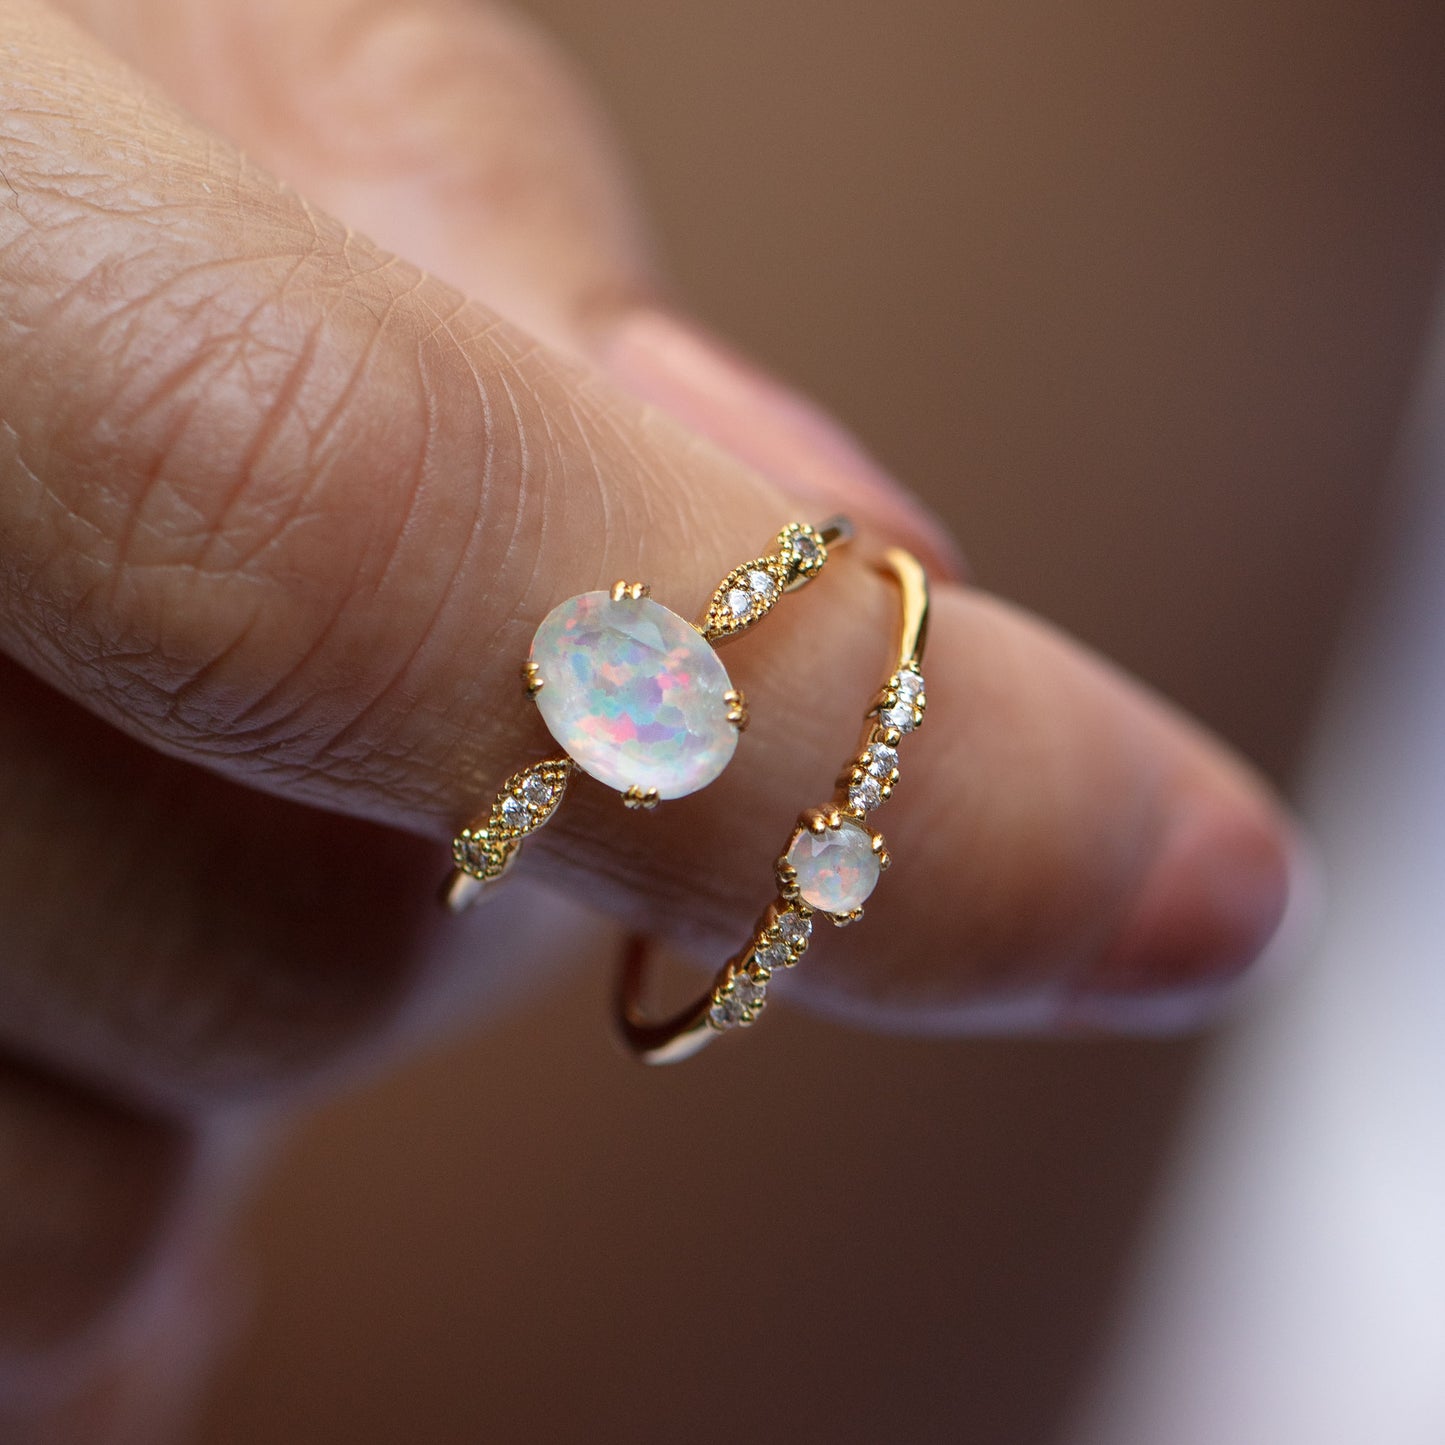 Opal Fire Ring